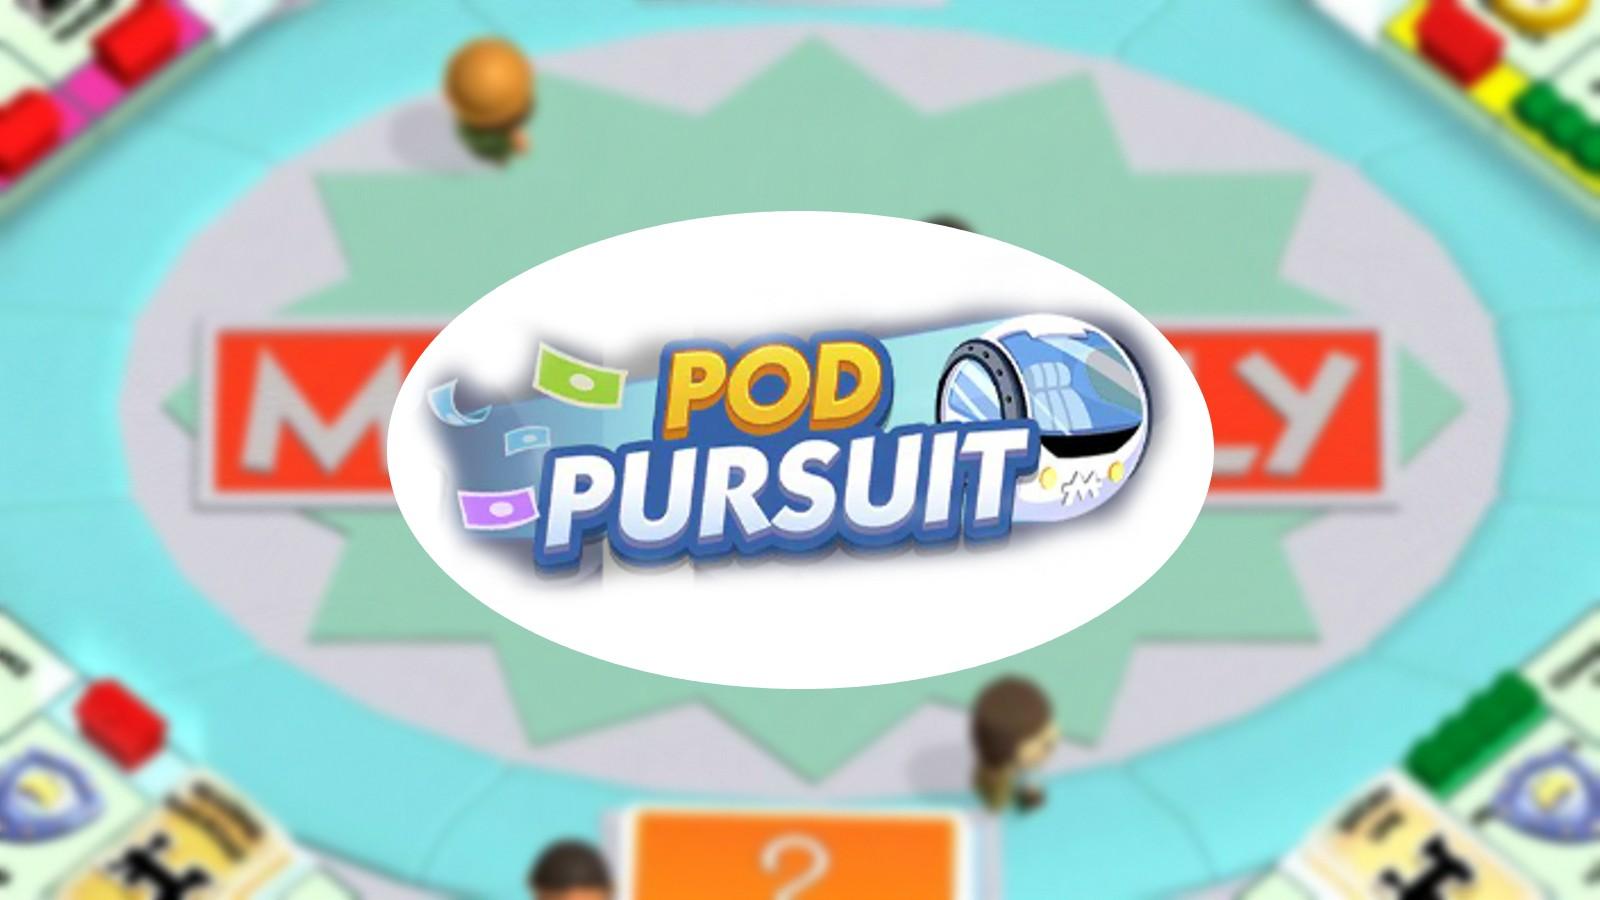 Pod Pursuit rewards monopoly go